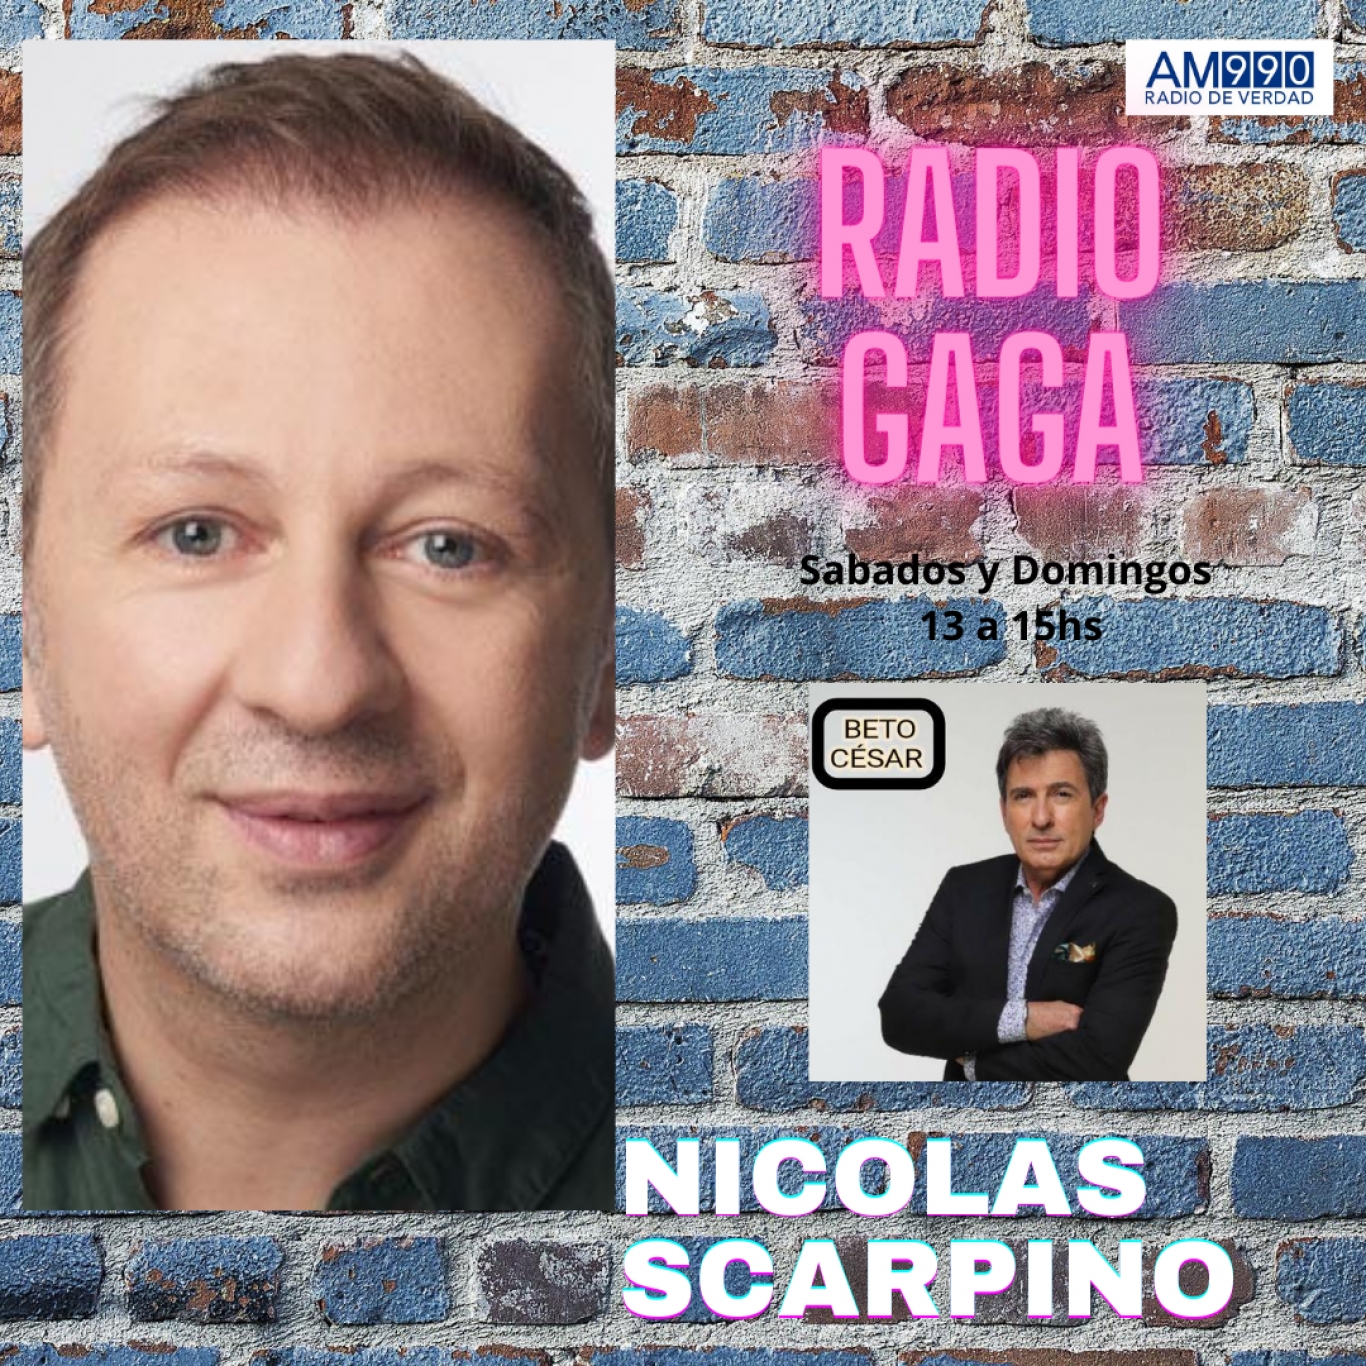 Nicolas Scarpino, charla hermosa en Radio GaGa